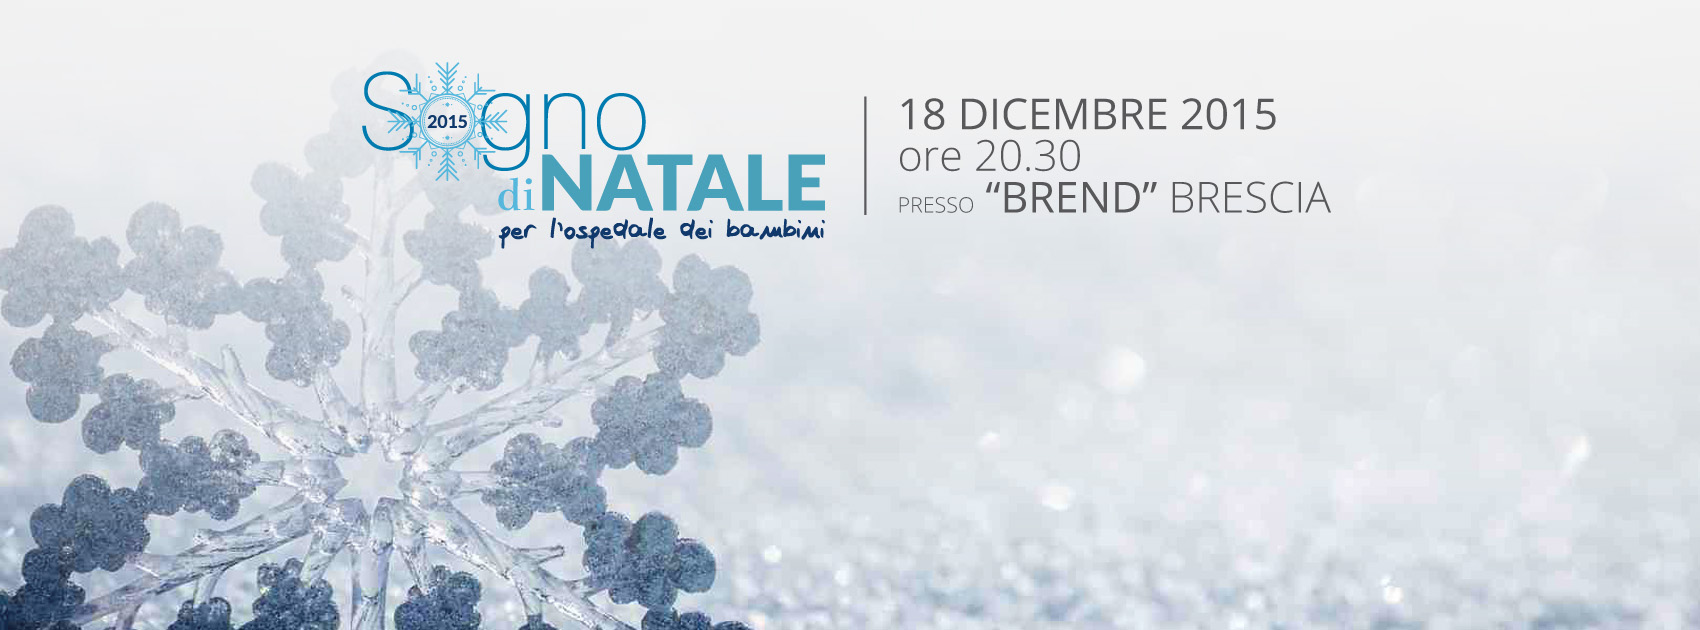 Alba-Consulting.Sogno-di-Natale-2015-Brescia